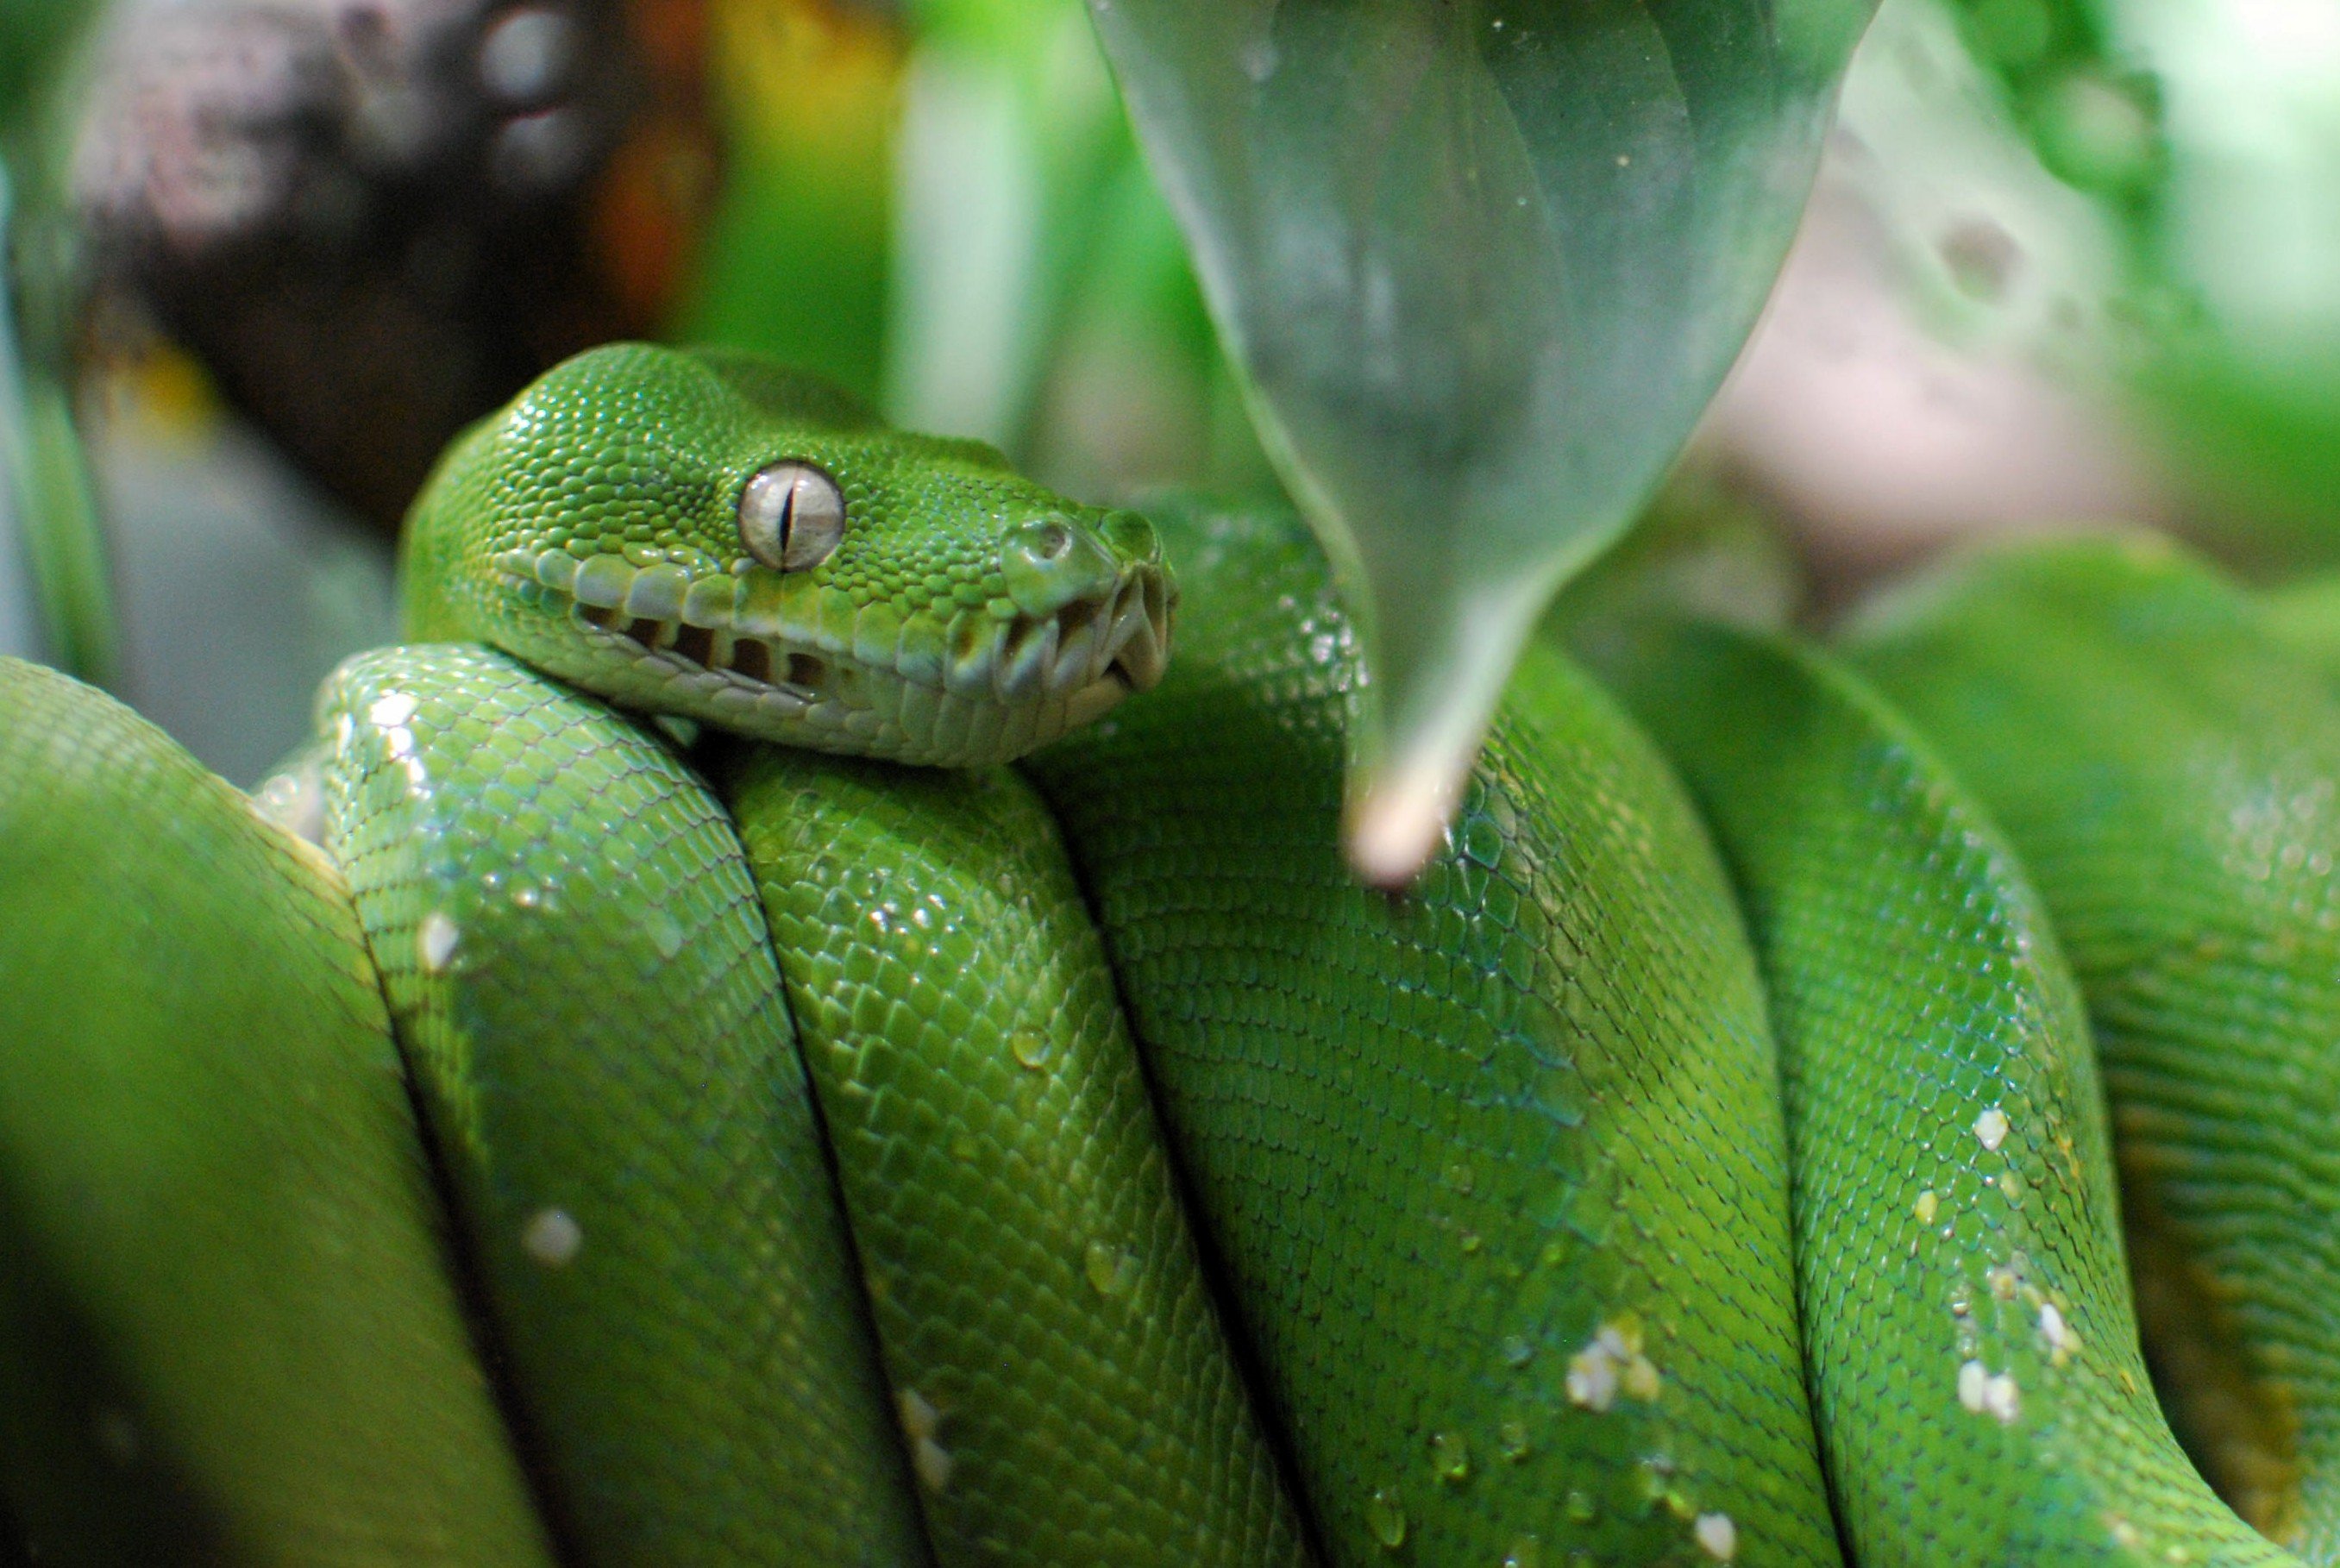 Un python d'un vert éclatant enroulé autour d'une branche comme un ressort, avec sa tête reposant sur son corps, son œil regardant directement vers la caméra